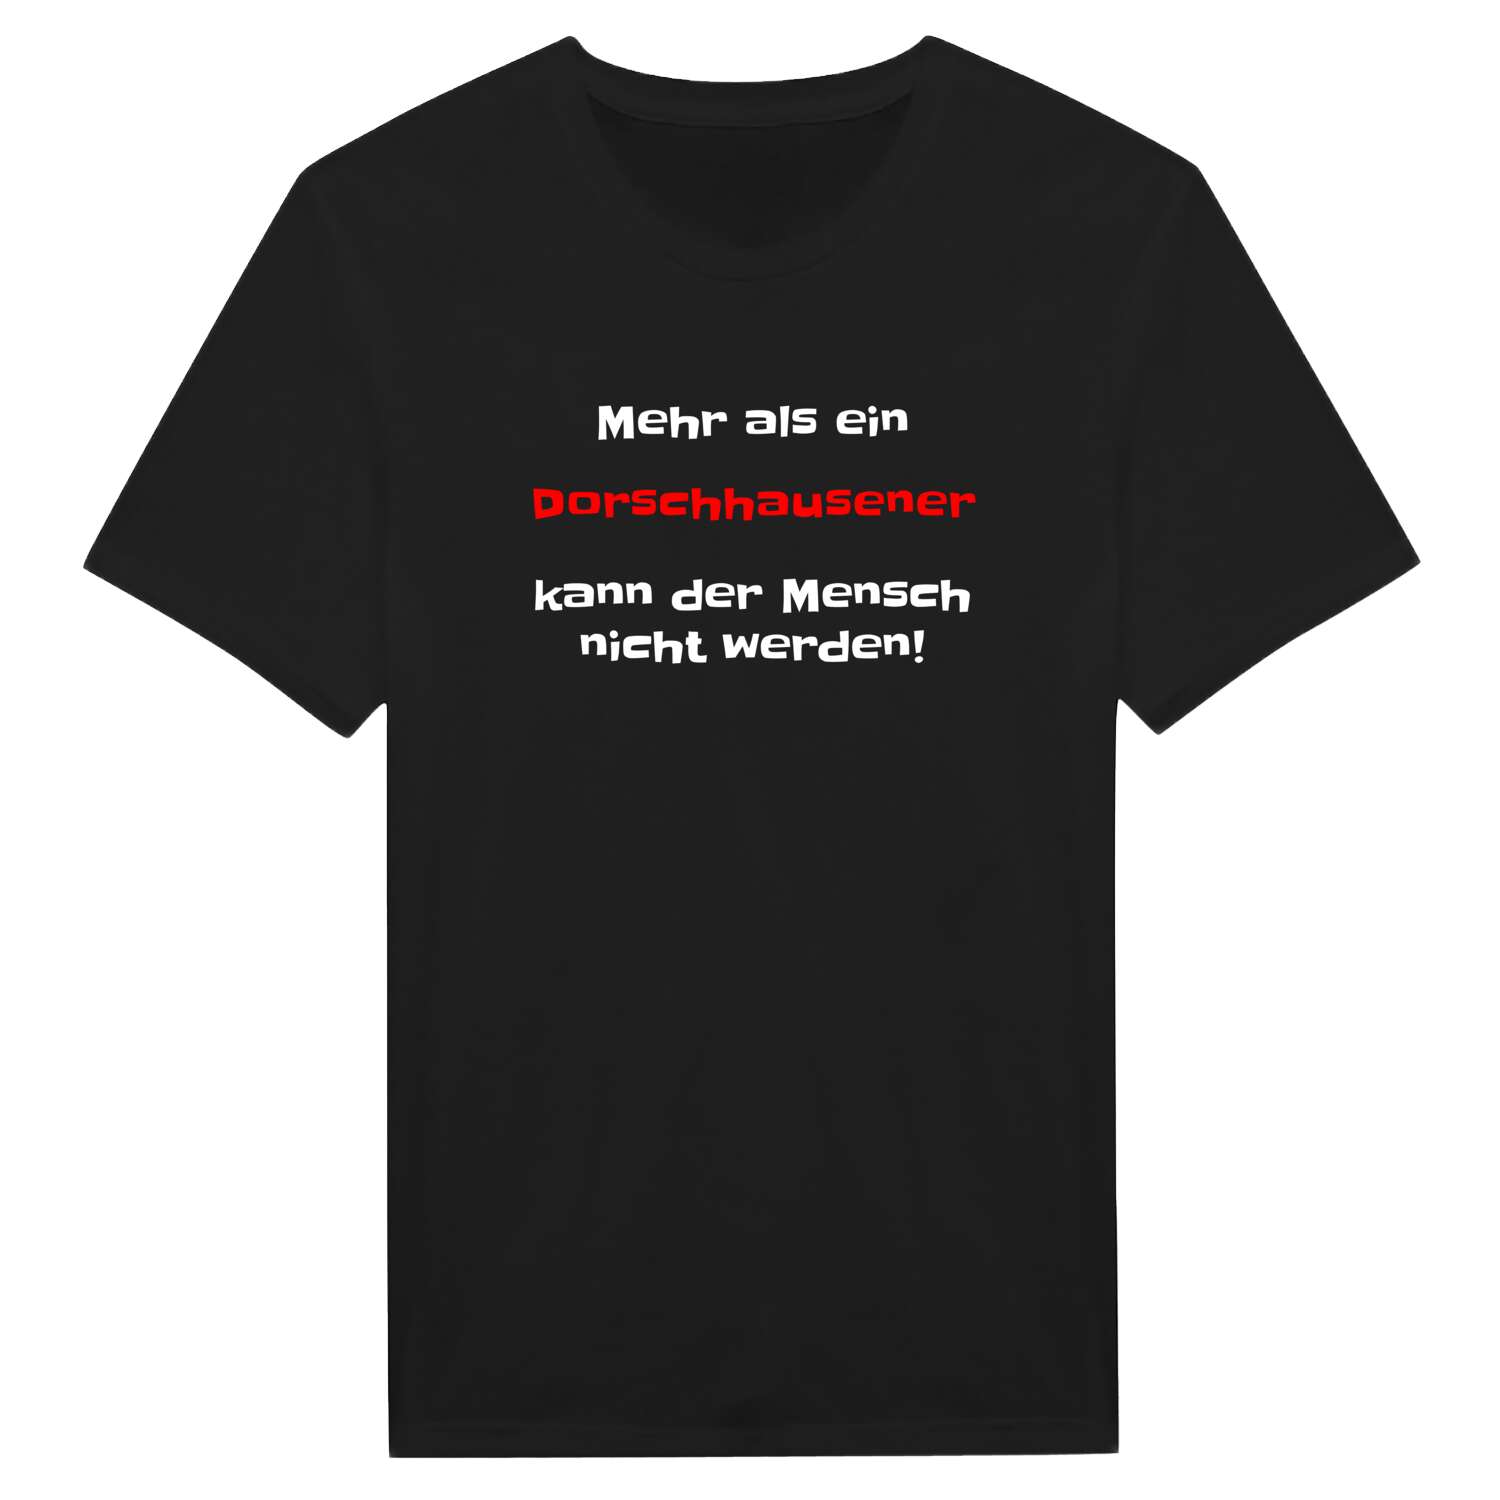 Dorschhausen T-Shirt »Mehr als ein«